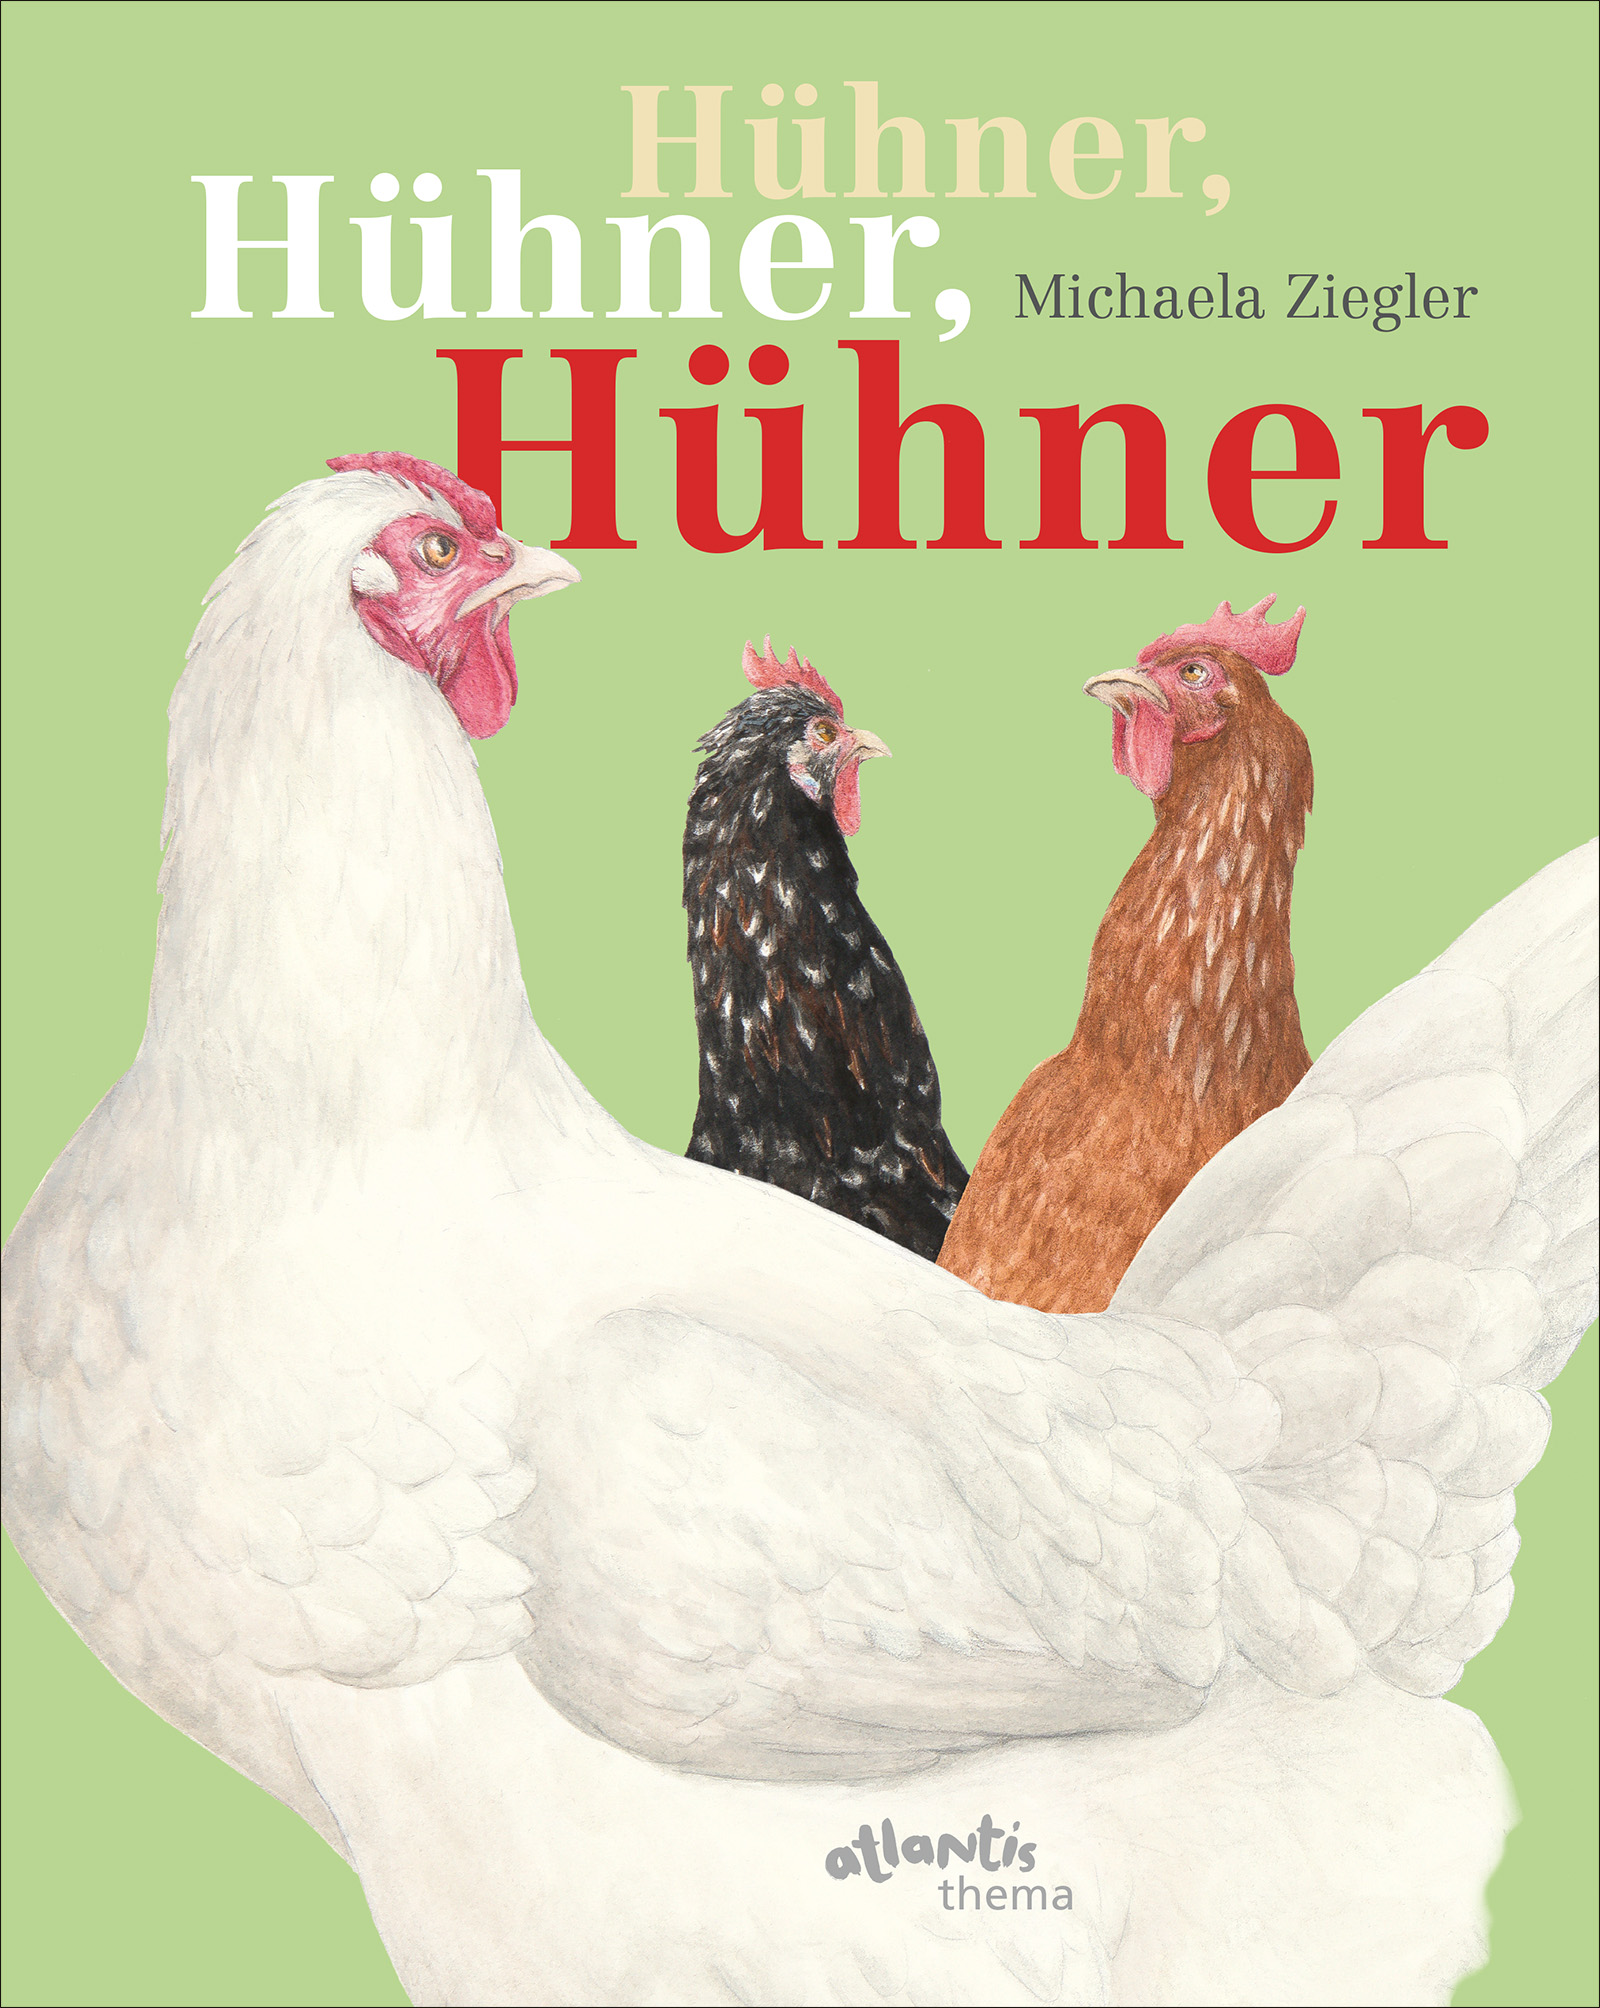 Buchcover "Hühner, Hühner, Hühner", Atlantis